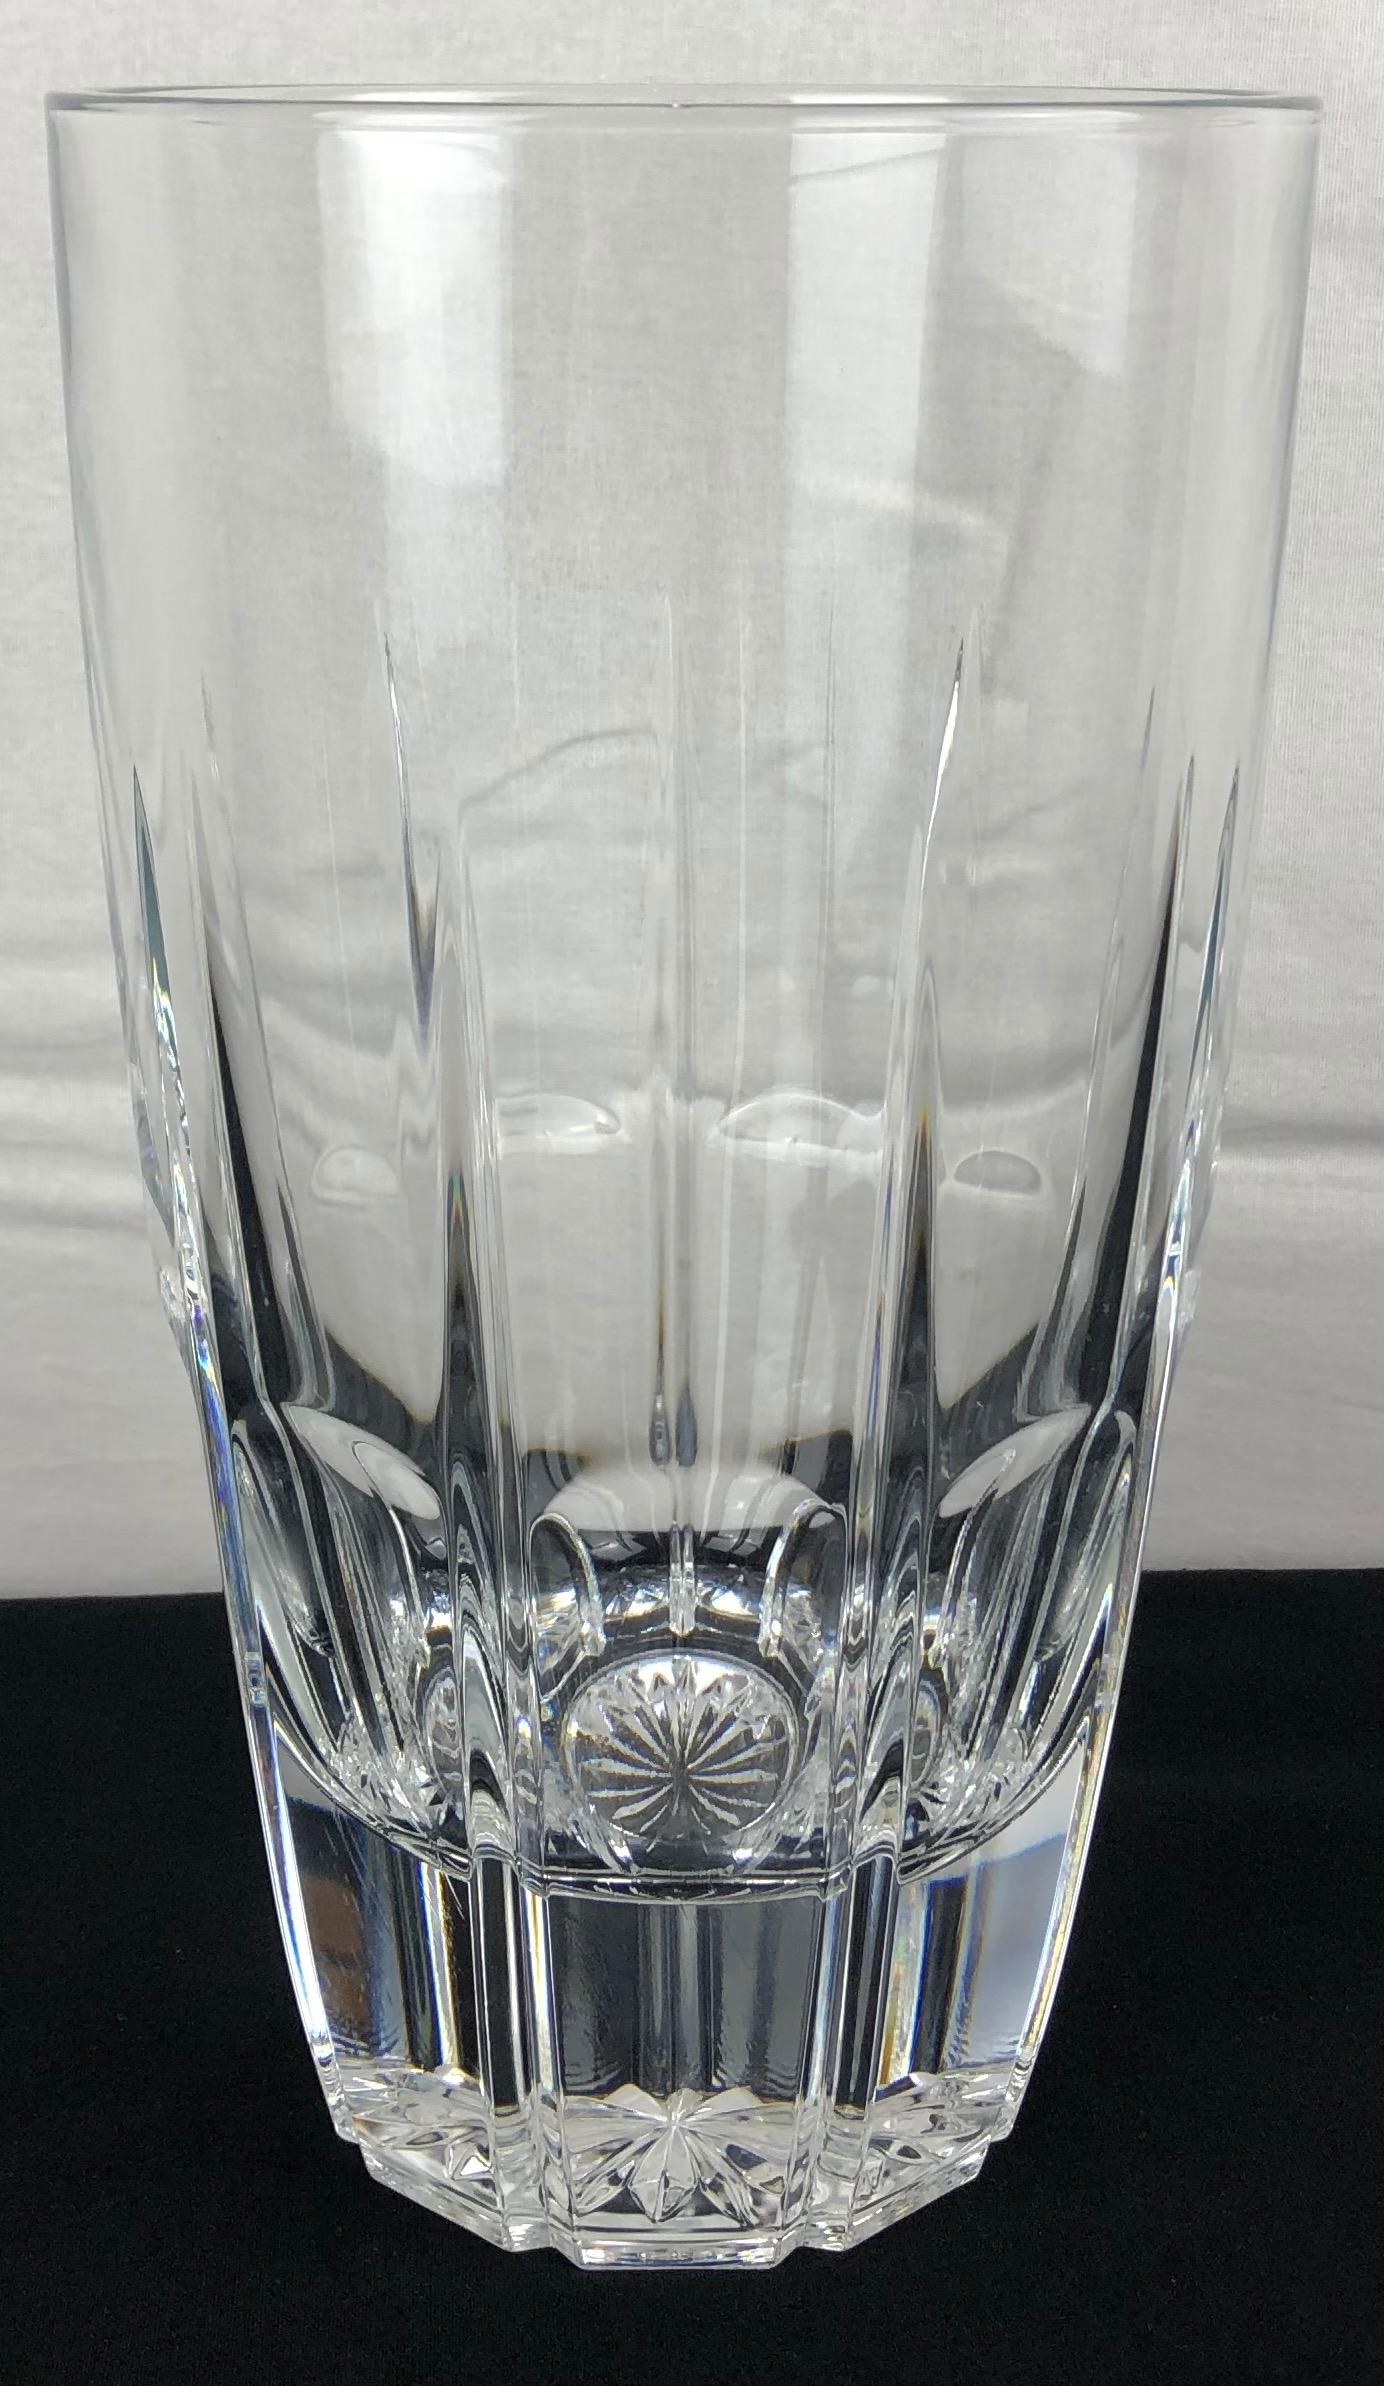 Eine französische Kristallvase, die von einem einfachen Design bis hin zu außergewöhnlichen Details des französischen Kunstglases aus den 1980er Jahren reicht. Herrlich schweres Kristall von sehr guter Qualität, das beim Anzapfen schön klingt.